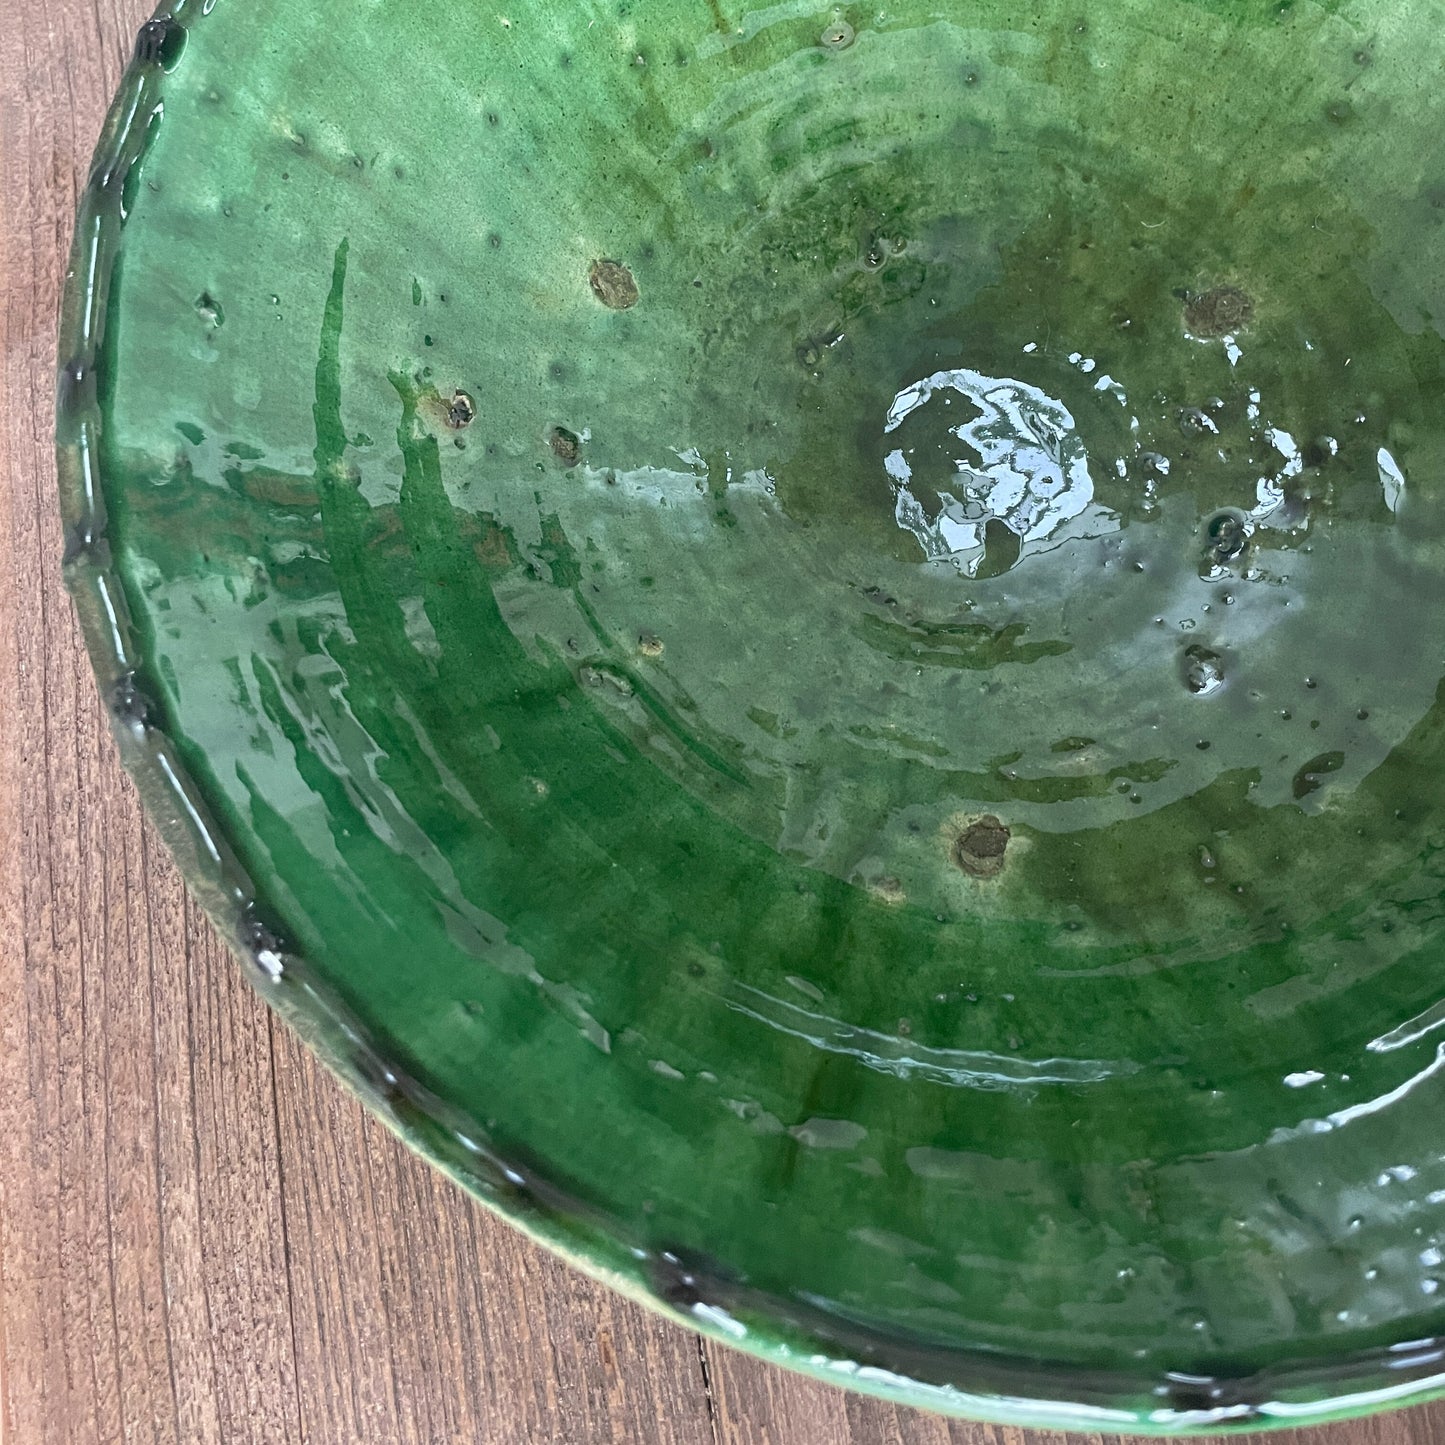 Green Tamegroute salad bowl - 30 cm. in diameter